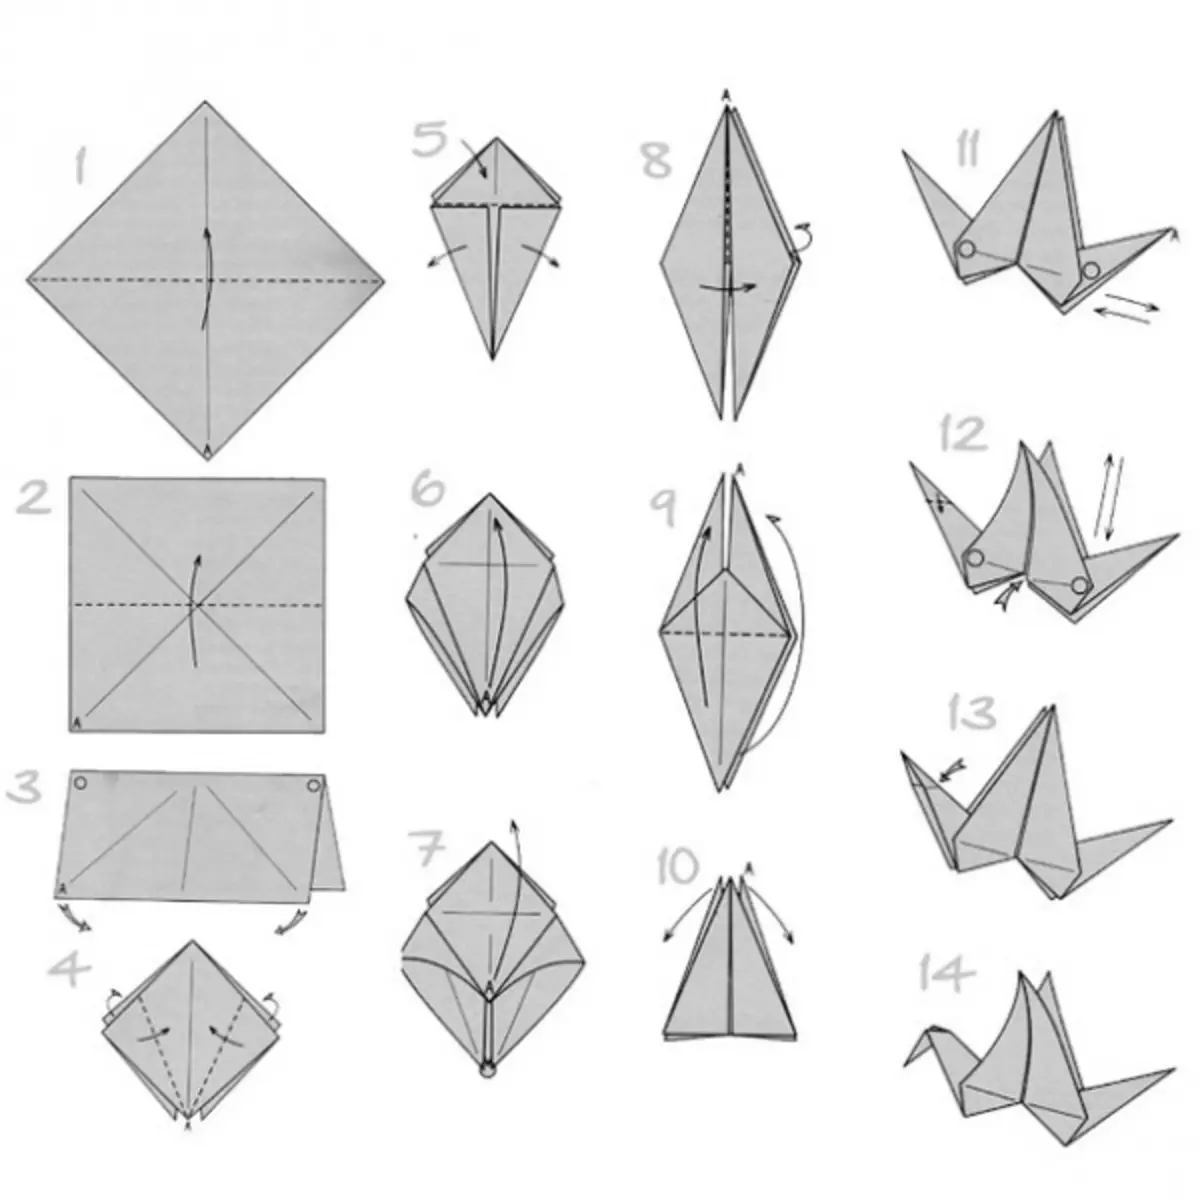 איך לעשות ברבור נייר: גרסה אוריגמי פשוט עם תמונות וסרטונים